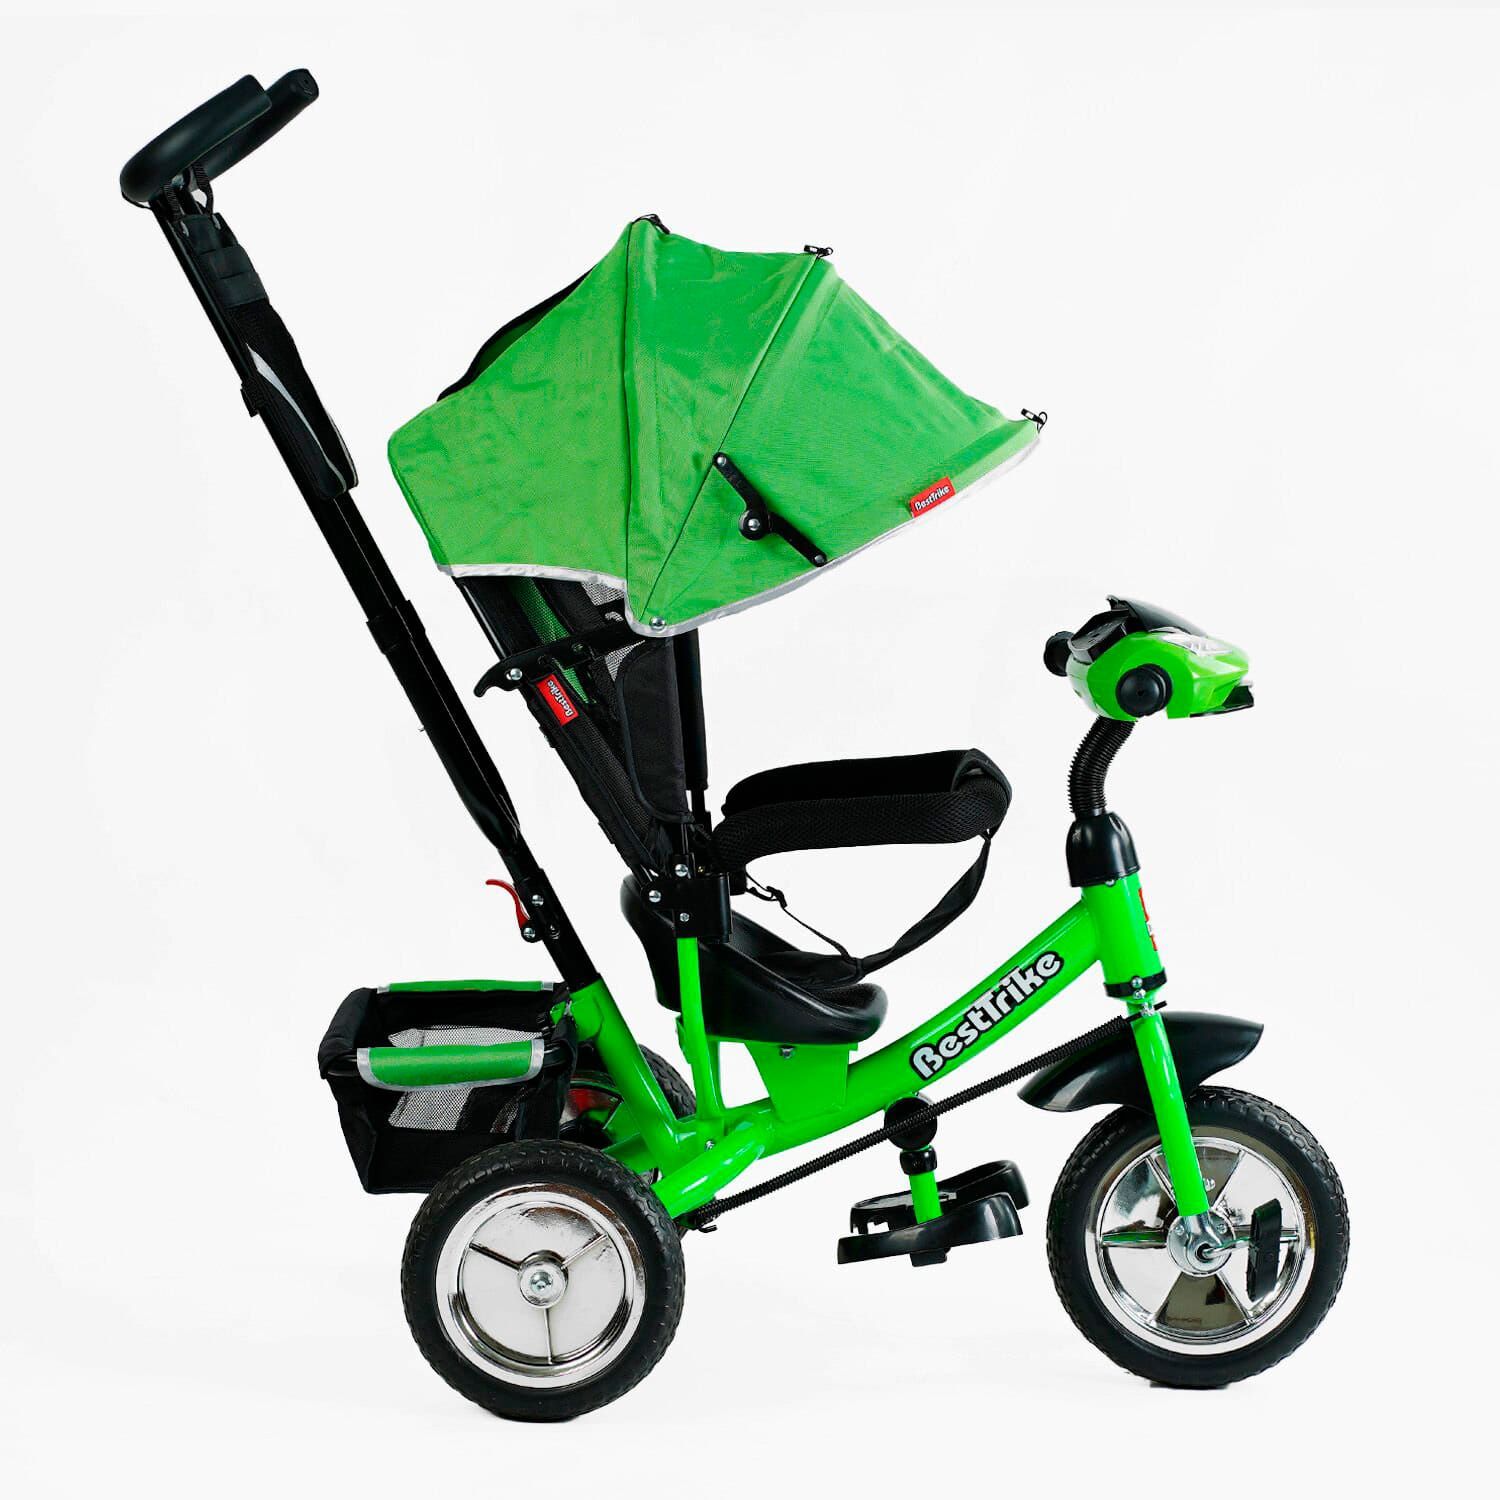 Трехколесный детский велосипед (6588/68-945) Best Trike колеса пена, фара музыкальная, USB, Bluetooth